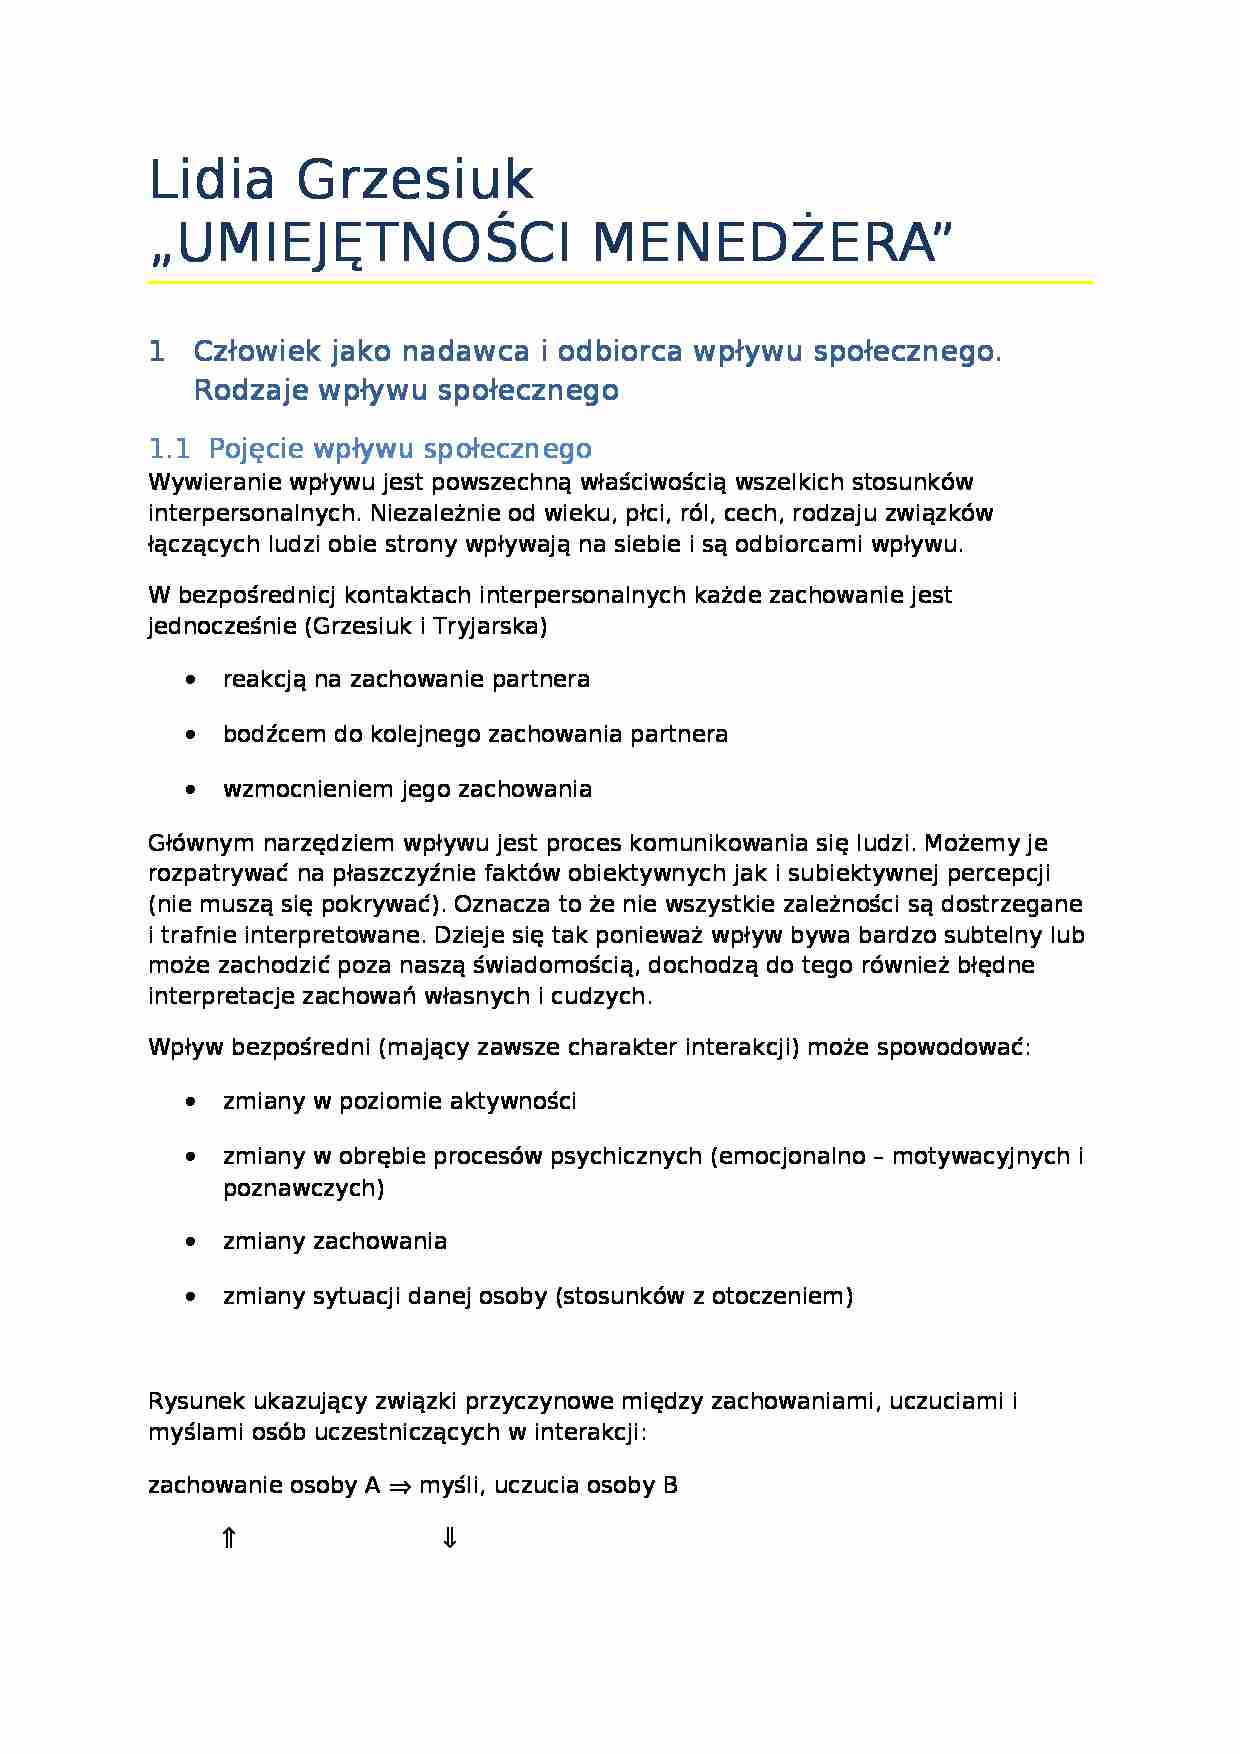  roz1-3 L.Grzesiuk-Umiejętności menadżera - strona 1